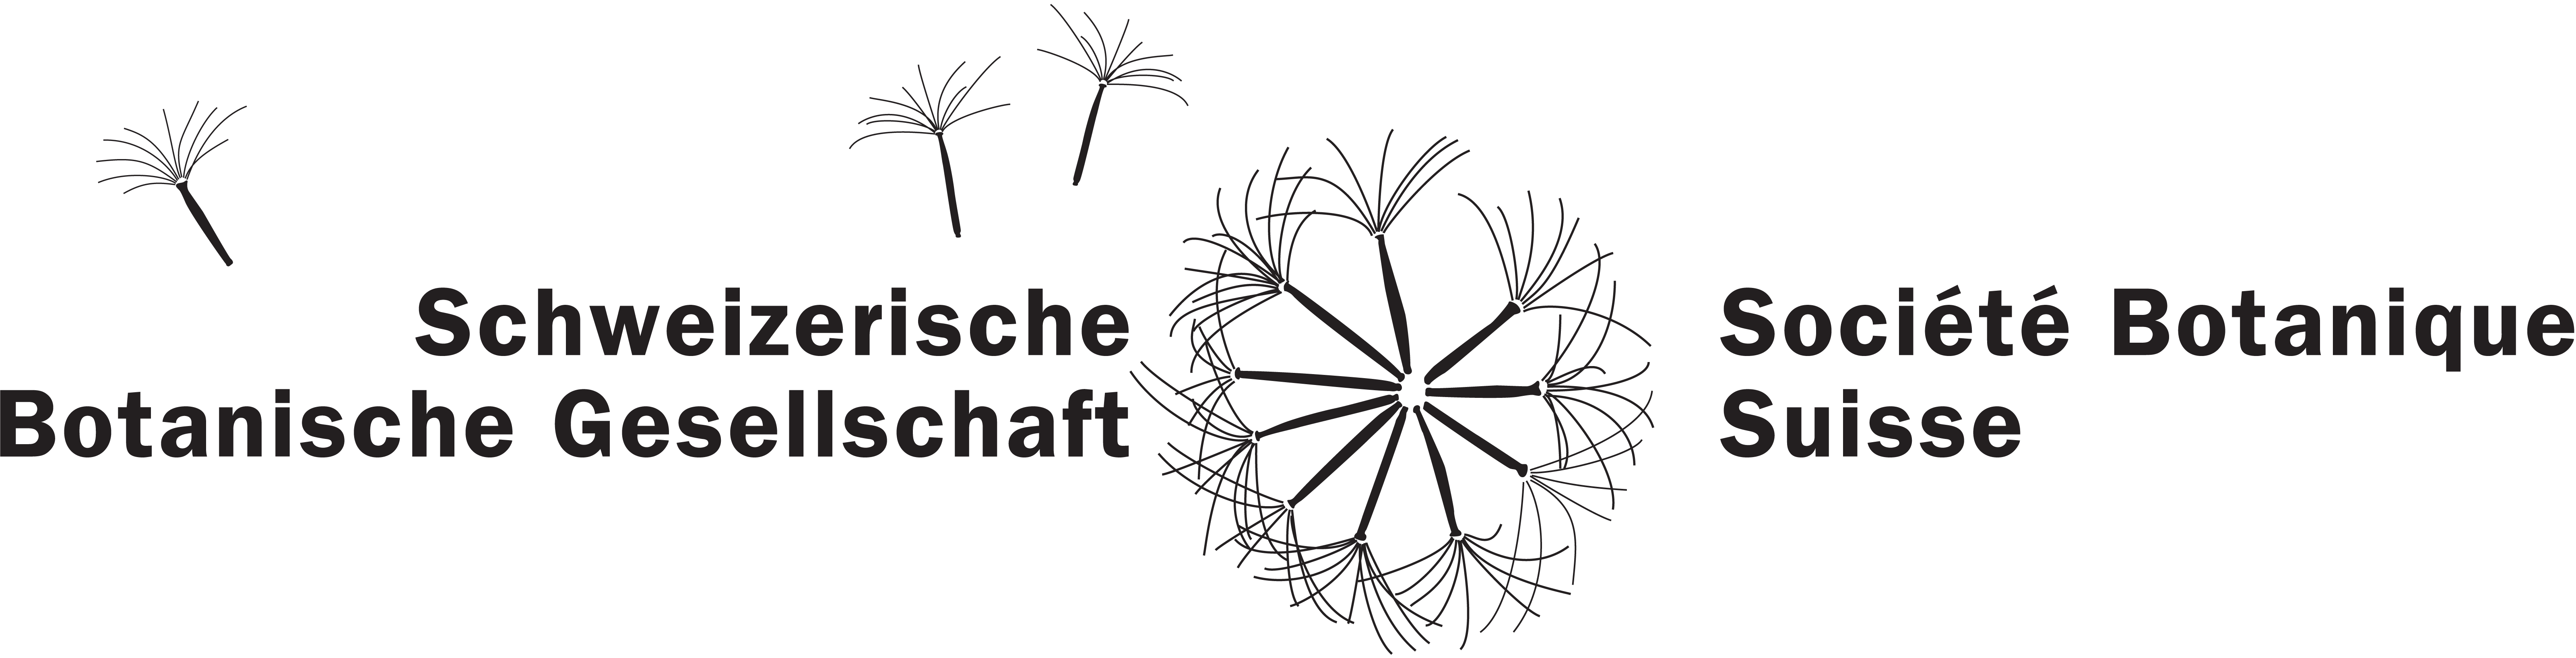 Société botanique suisse